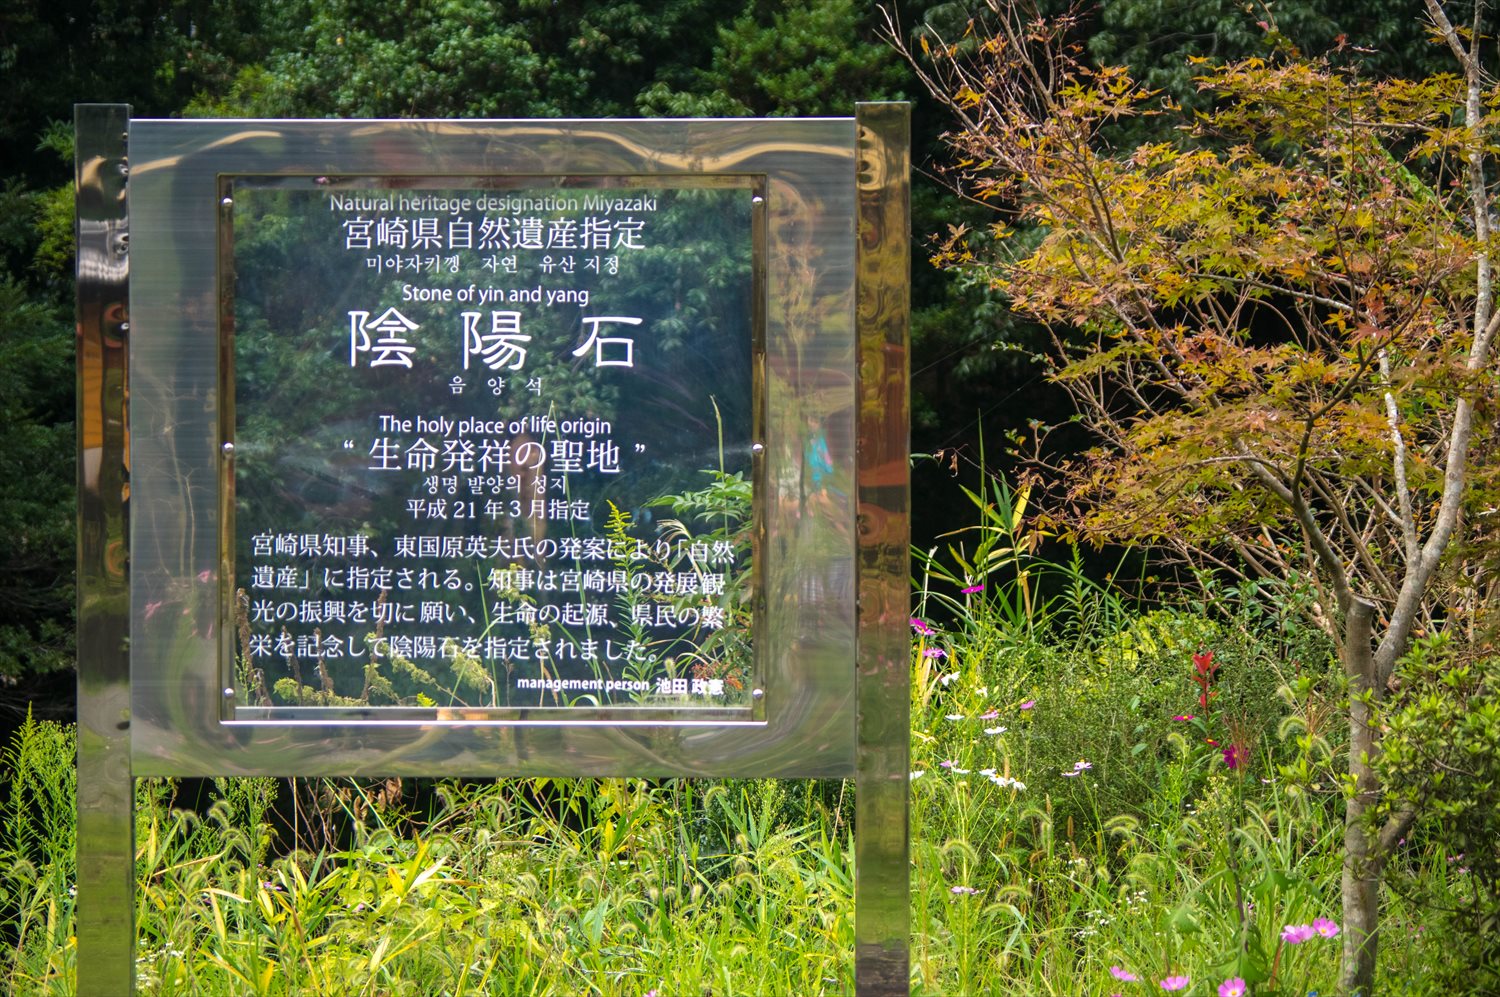 陰陽石 宮崎県の自然遺産 性器の石